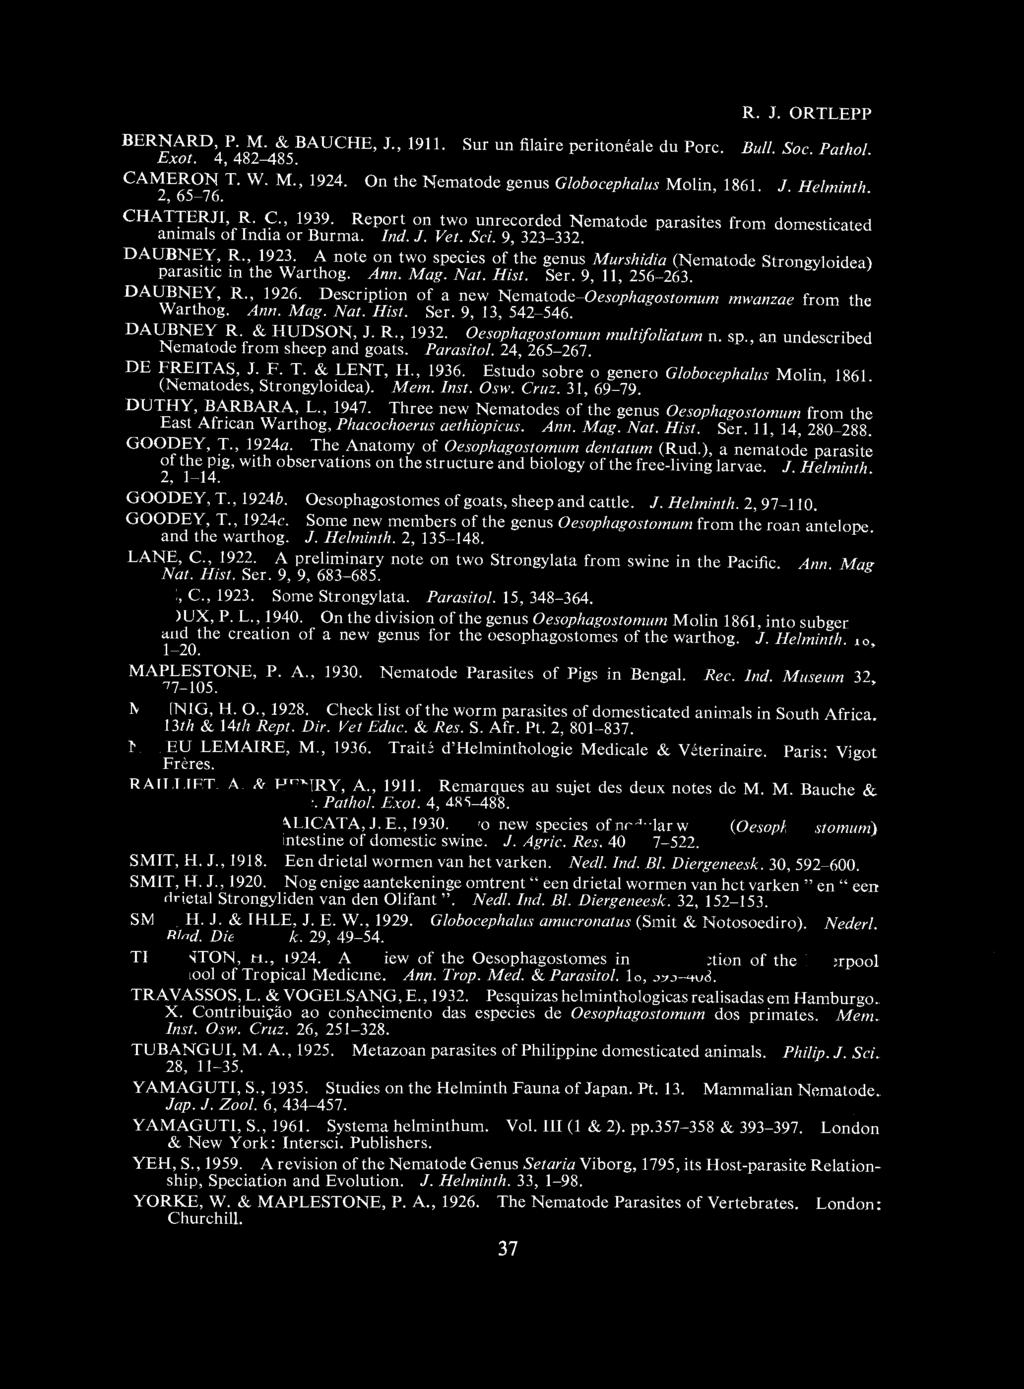 R. J. ORTLEPP BERNARD, P. M. & BAUCH, J., 1911. Sur un filaire peritom' ale du Pore. Bull. Soc. Pathol. Exot. 4, 482-485. CAMERON T. W. M., 1924. On the Nematode genus Globocephalus Molin, 1861. J. Helminth.